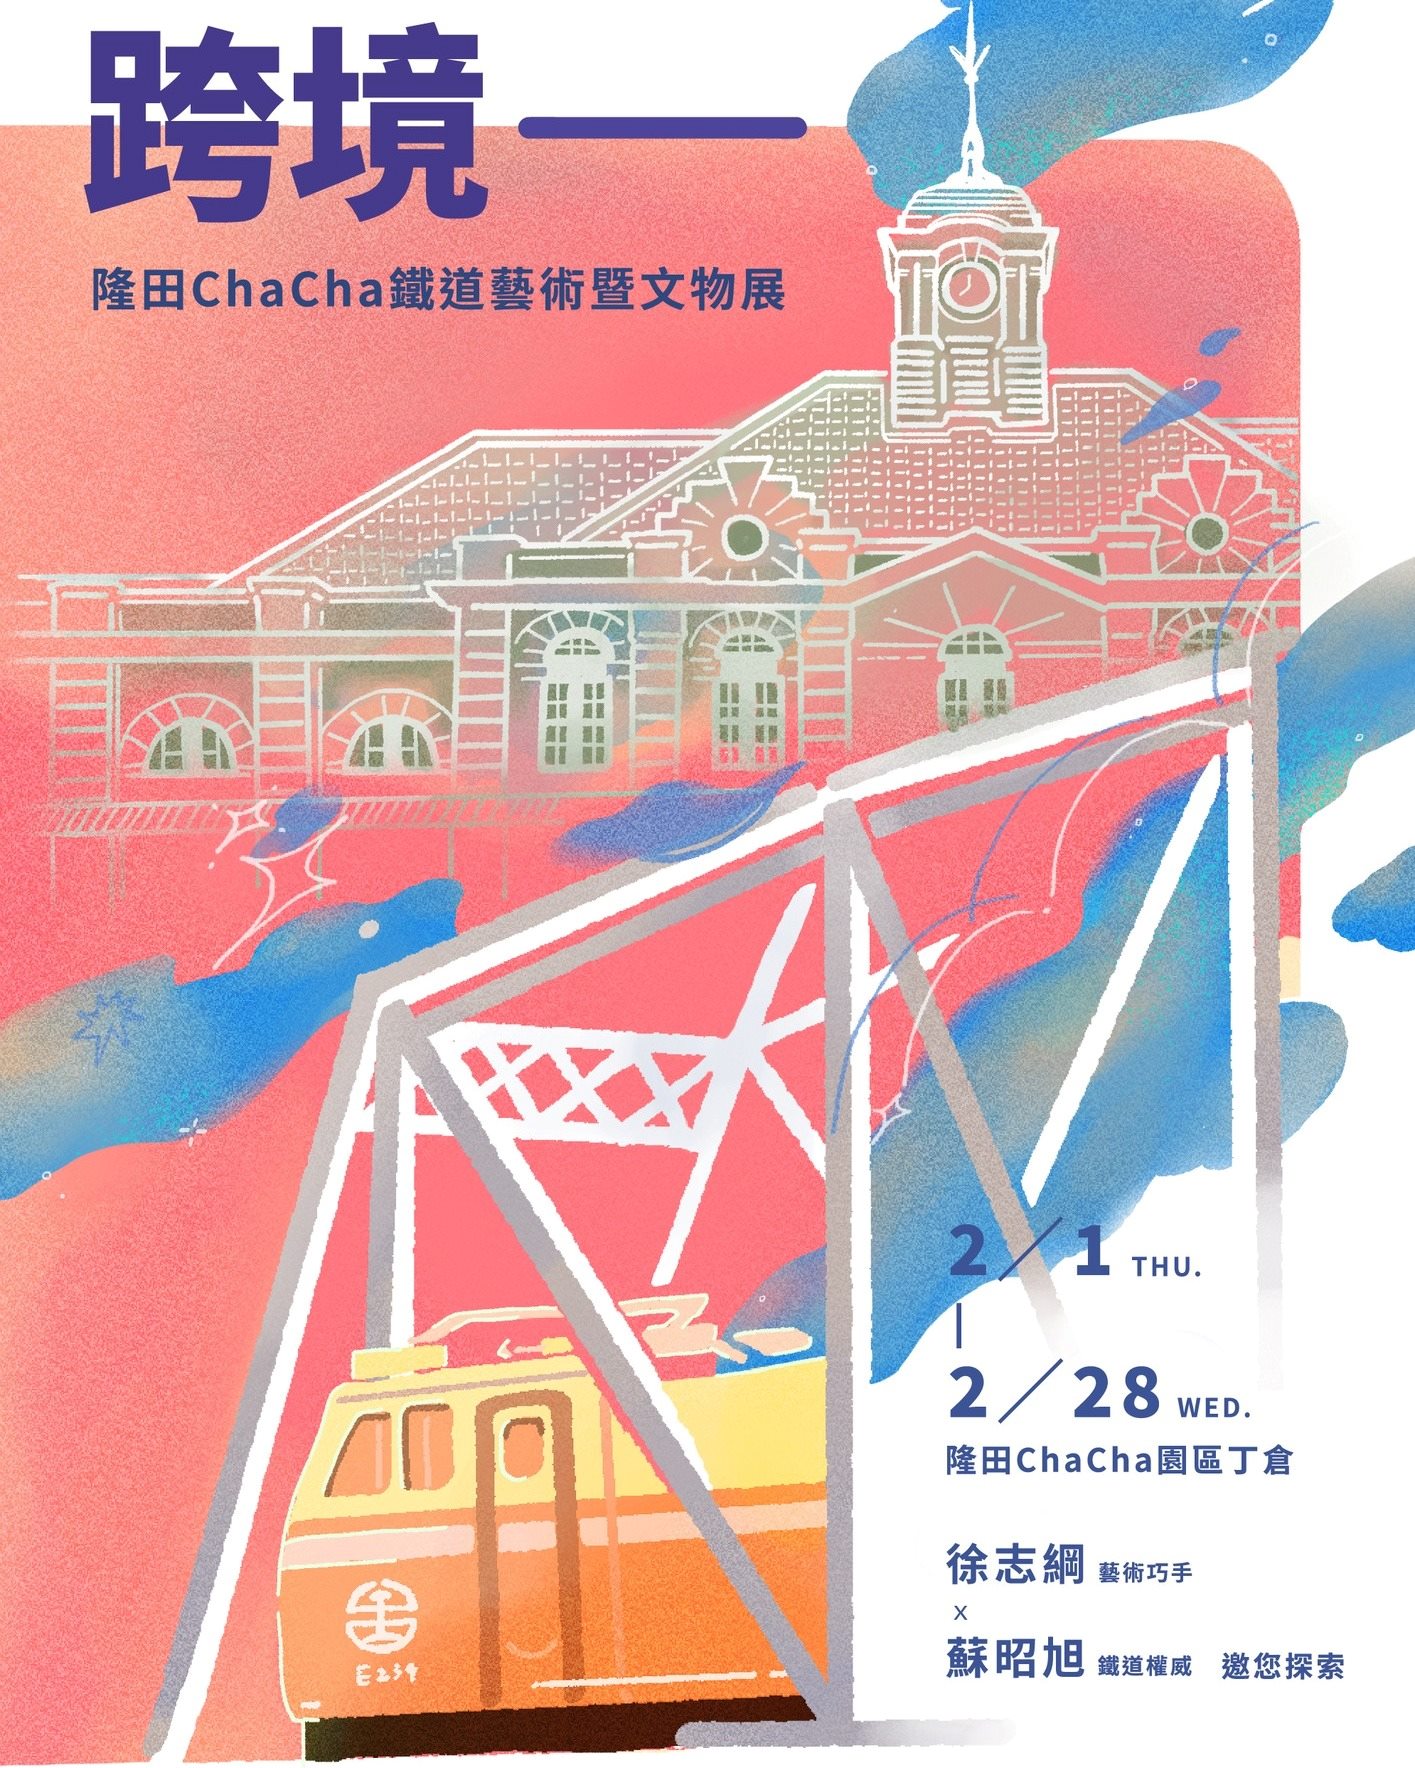 隆田Cha Cha鐵道藝術文物展  擬真模型與珍貴文物吸睛展出